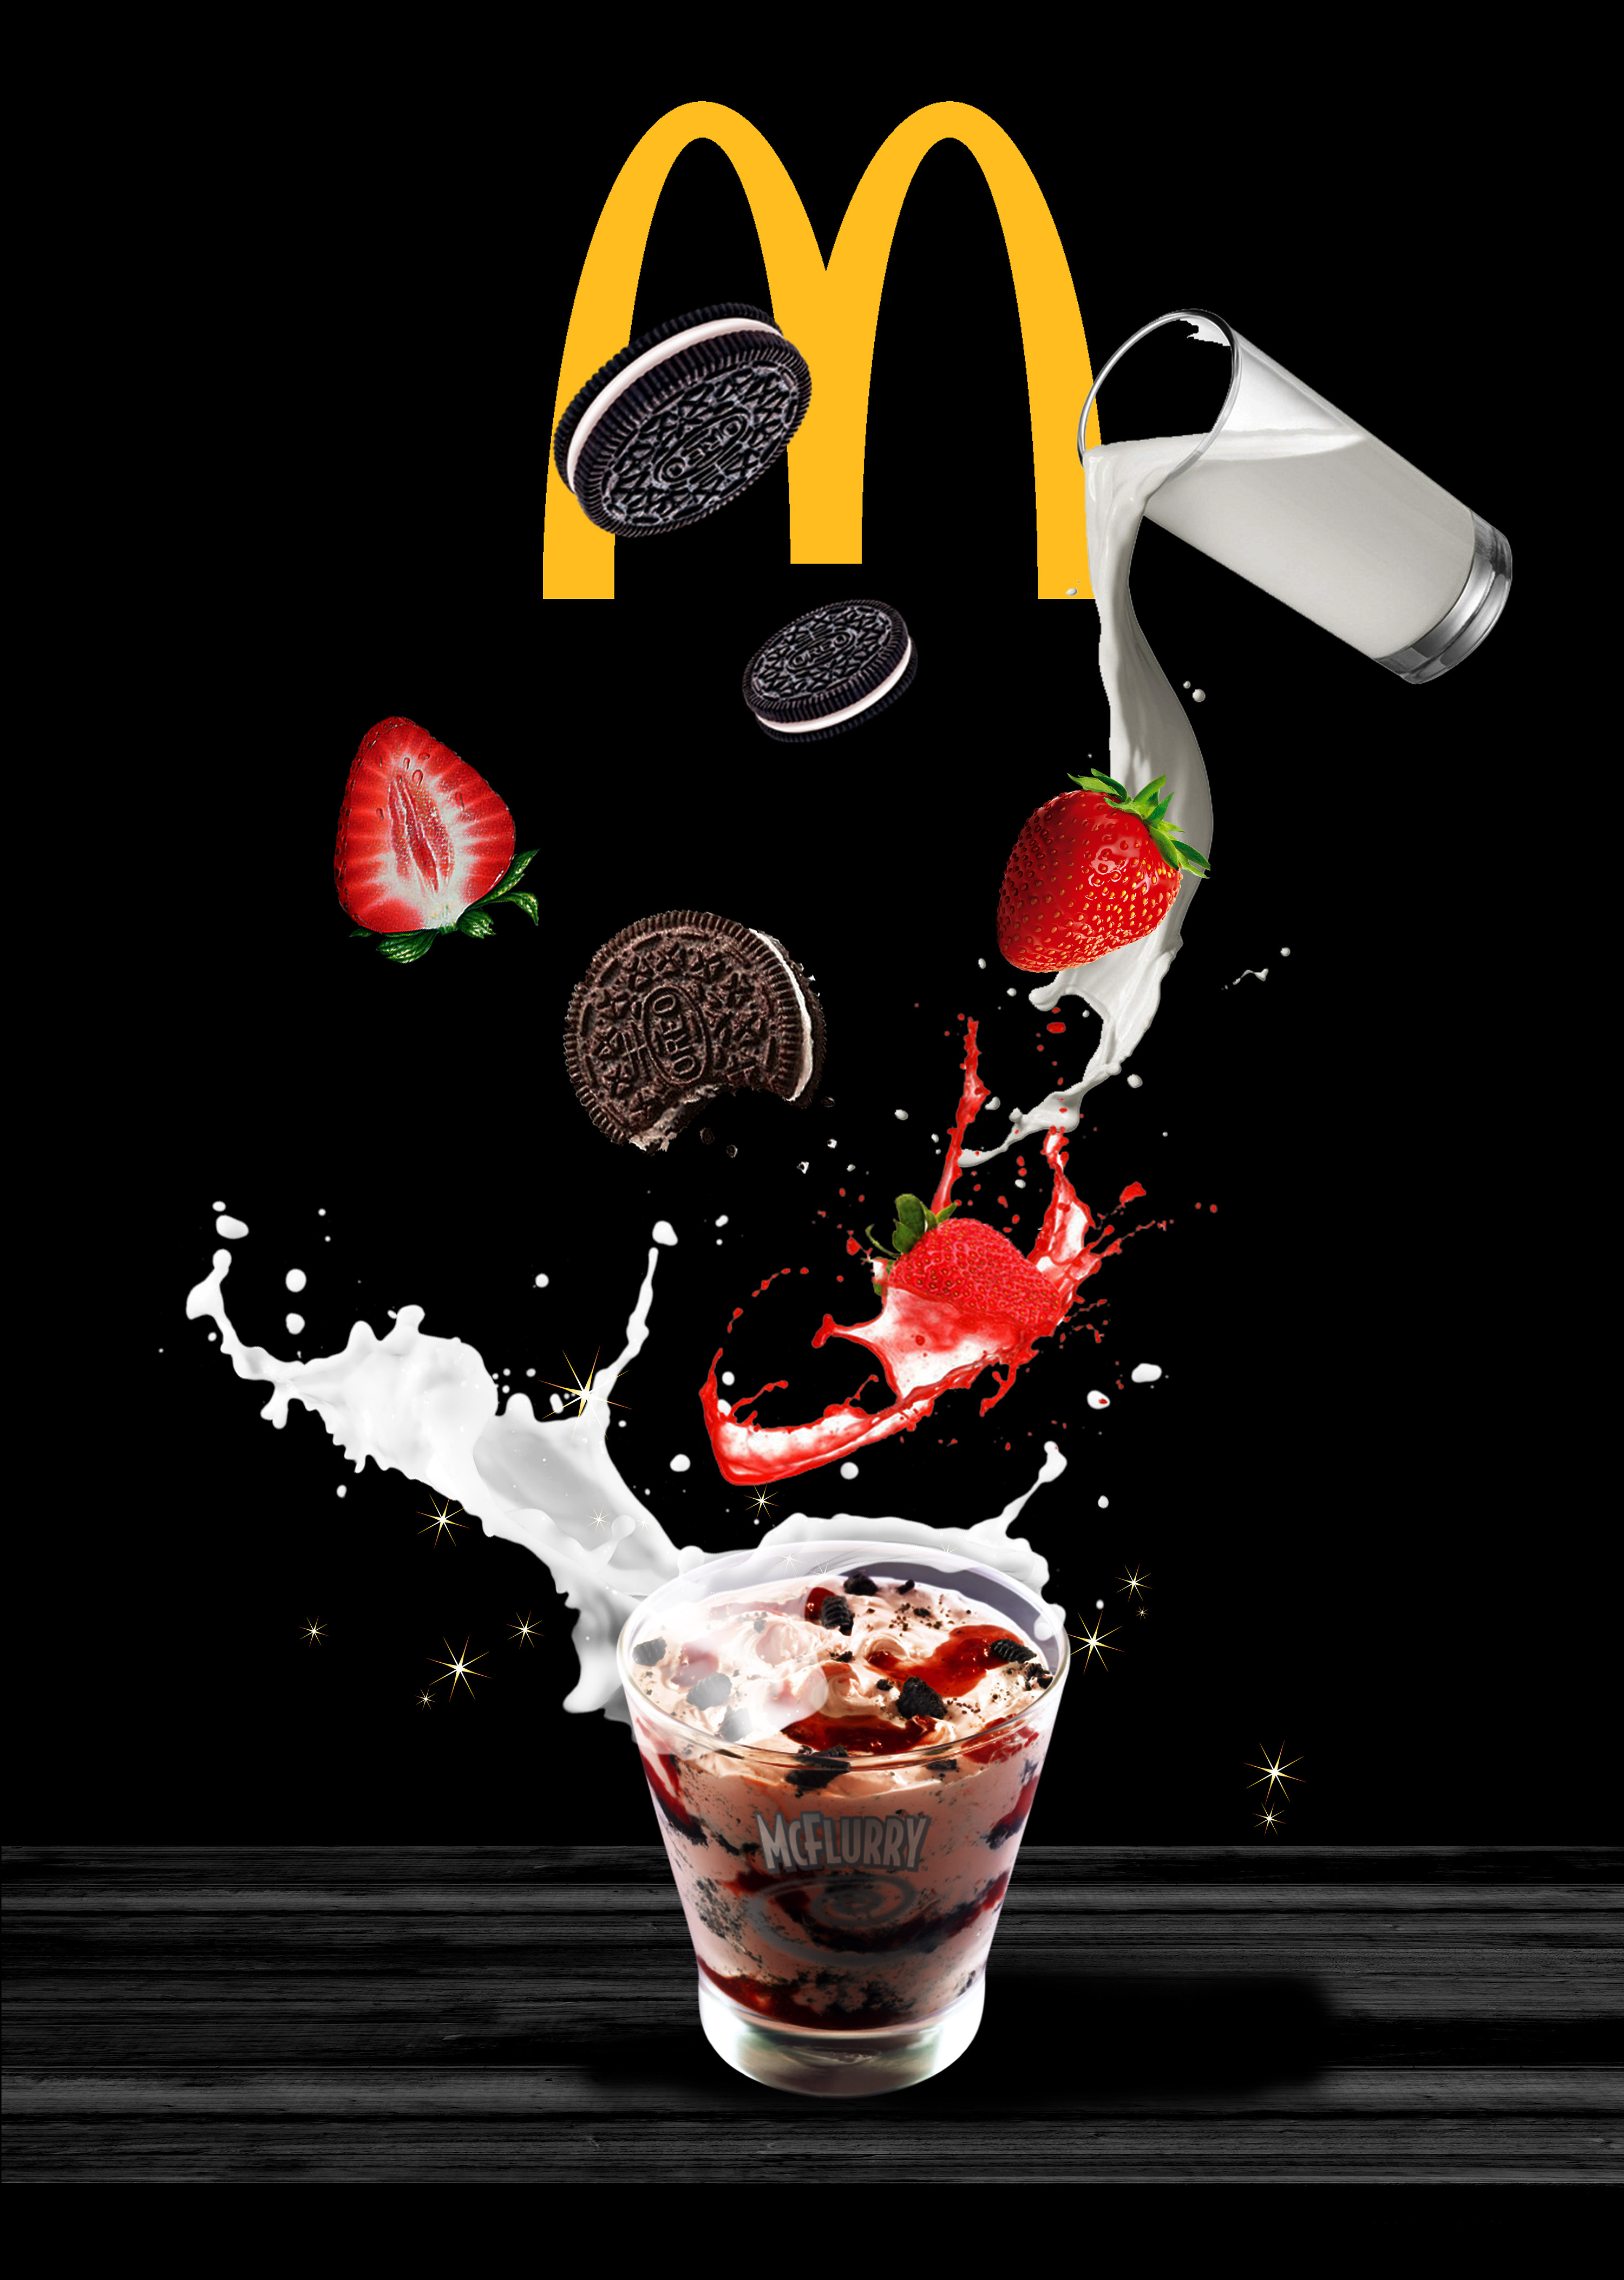 麦当劳广告照片图片